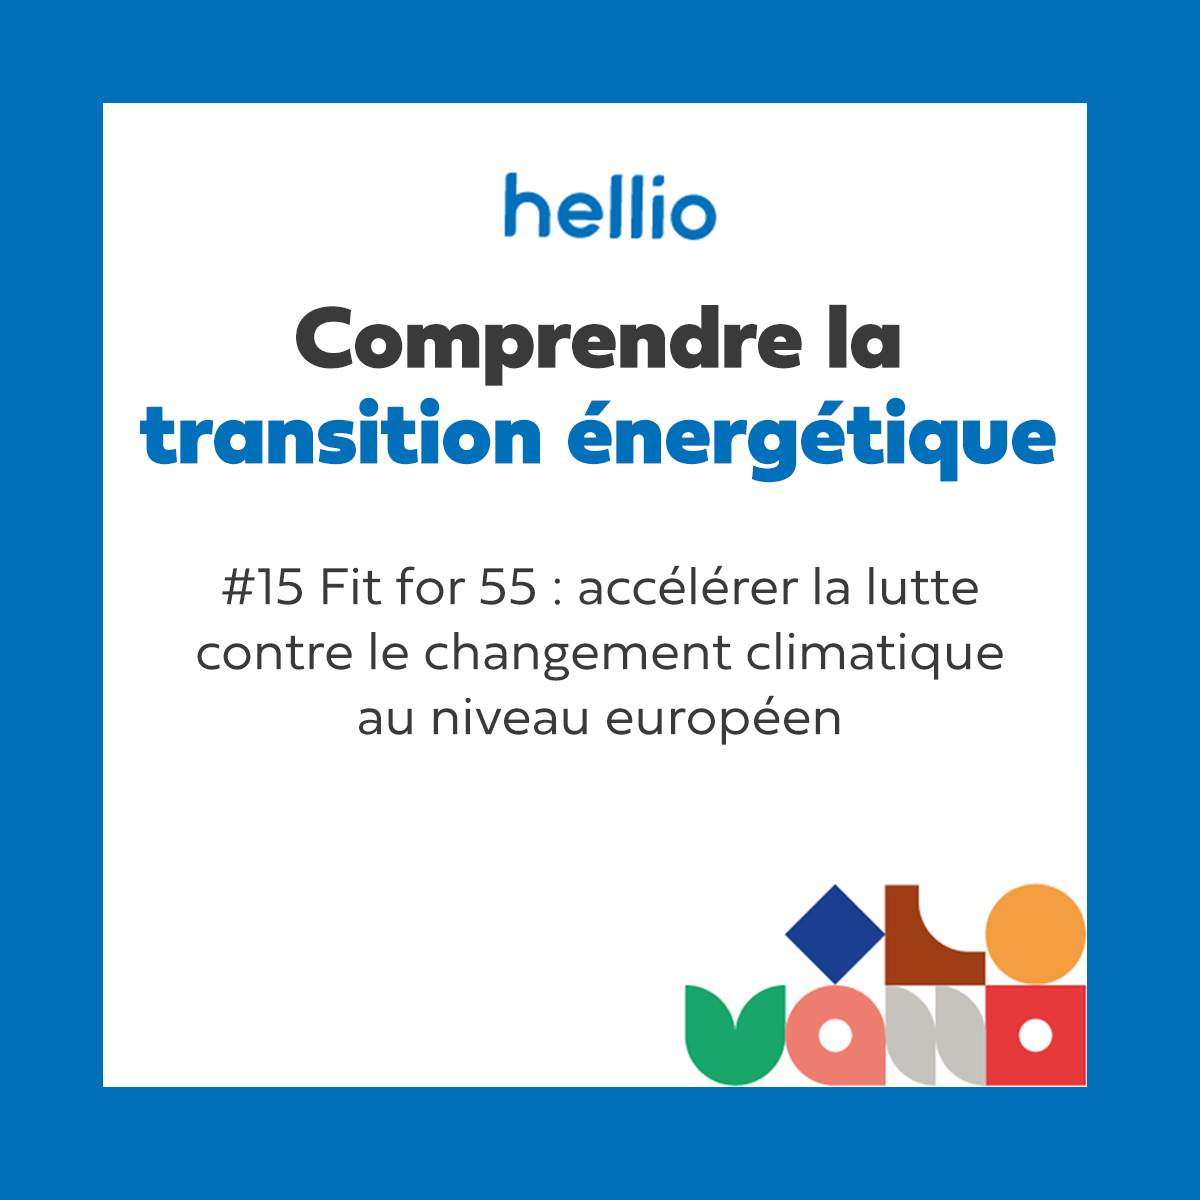 Marina Offel, responsable des affaires publiques et juridiques du groupe Hellio, détaille les enjeux de ce projet de textes, Fit for 55, pour la transition énergétique, pour les entreprises et pour les ménages.